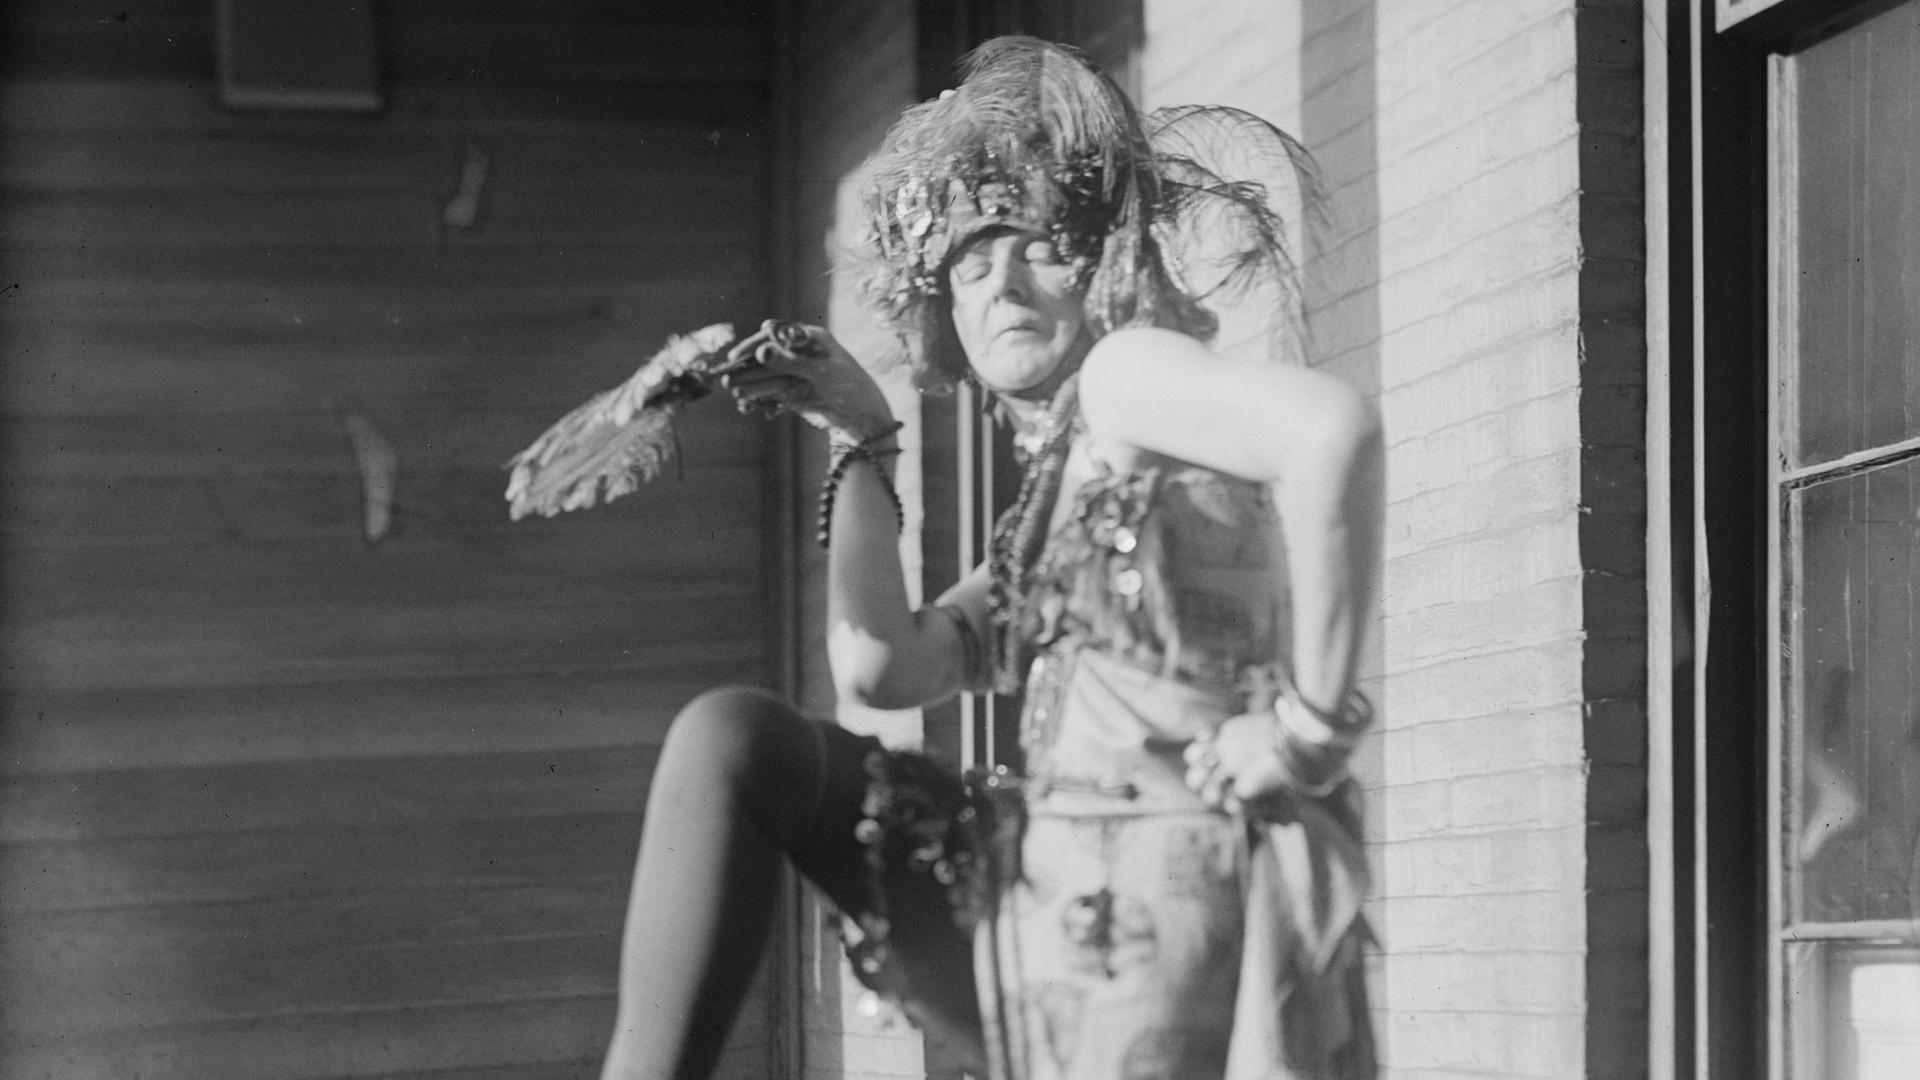 Schwarz-Weiß-Fotografie der Dada-Künstlerin Baroness Elsa Freytag-Loringhoven, bei einer Performance mit Kopfschmuck, ca. 1922.